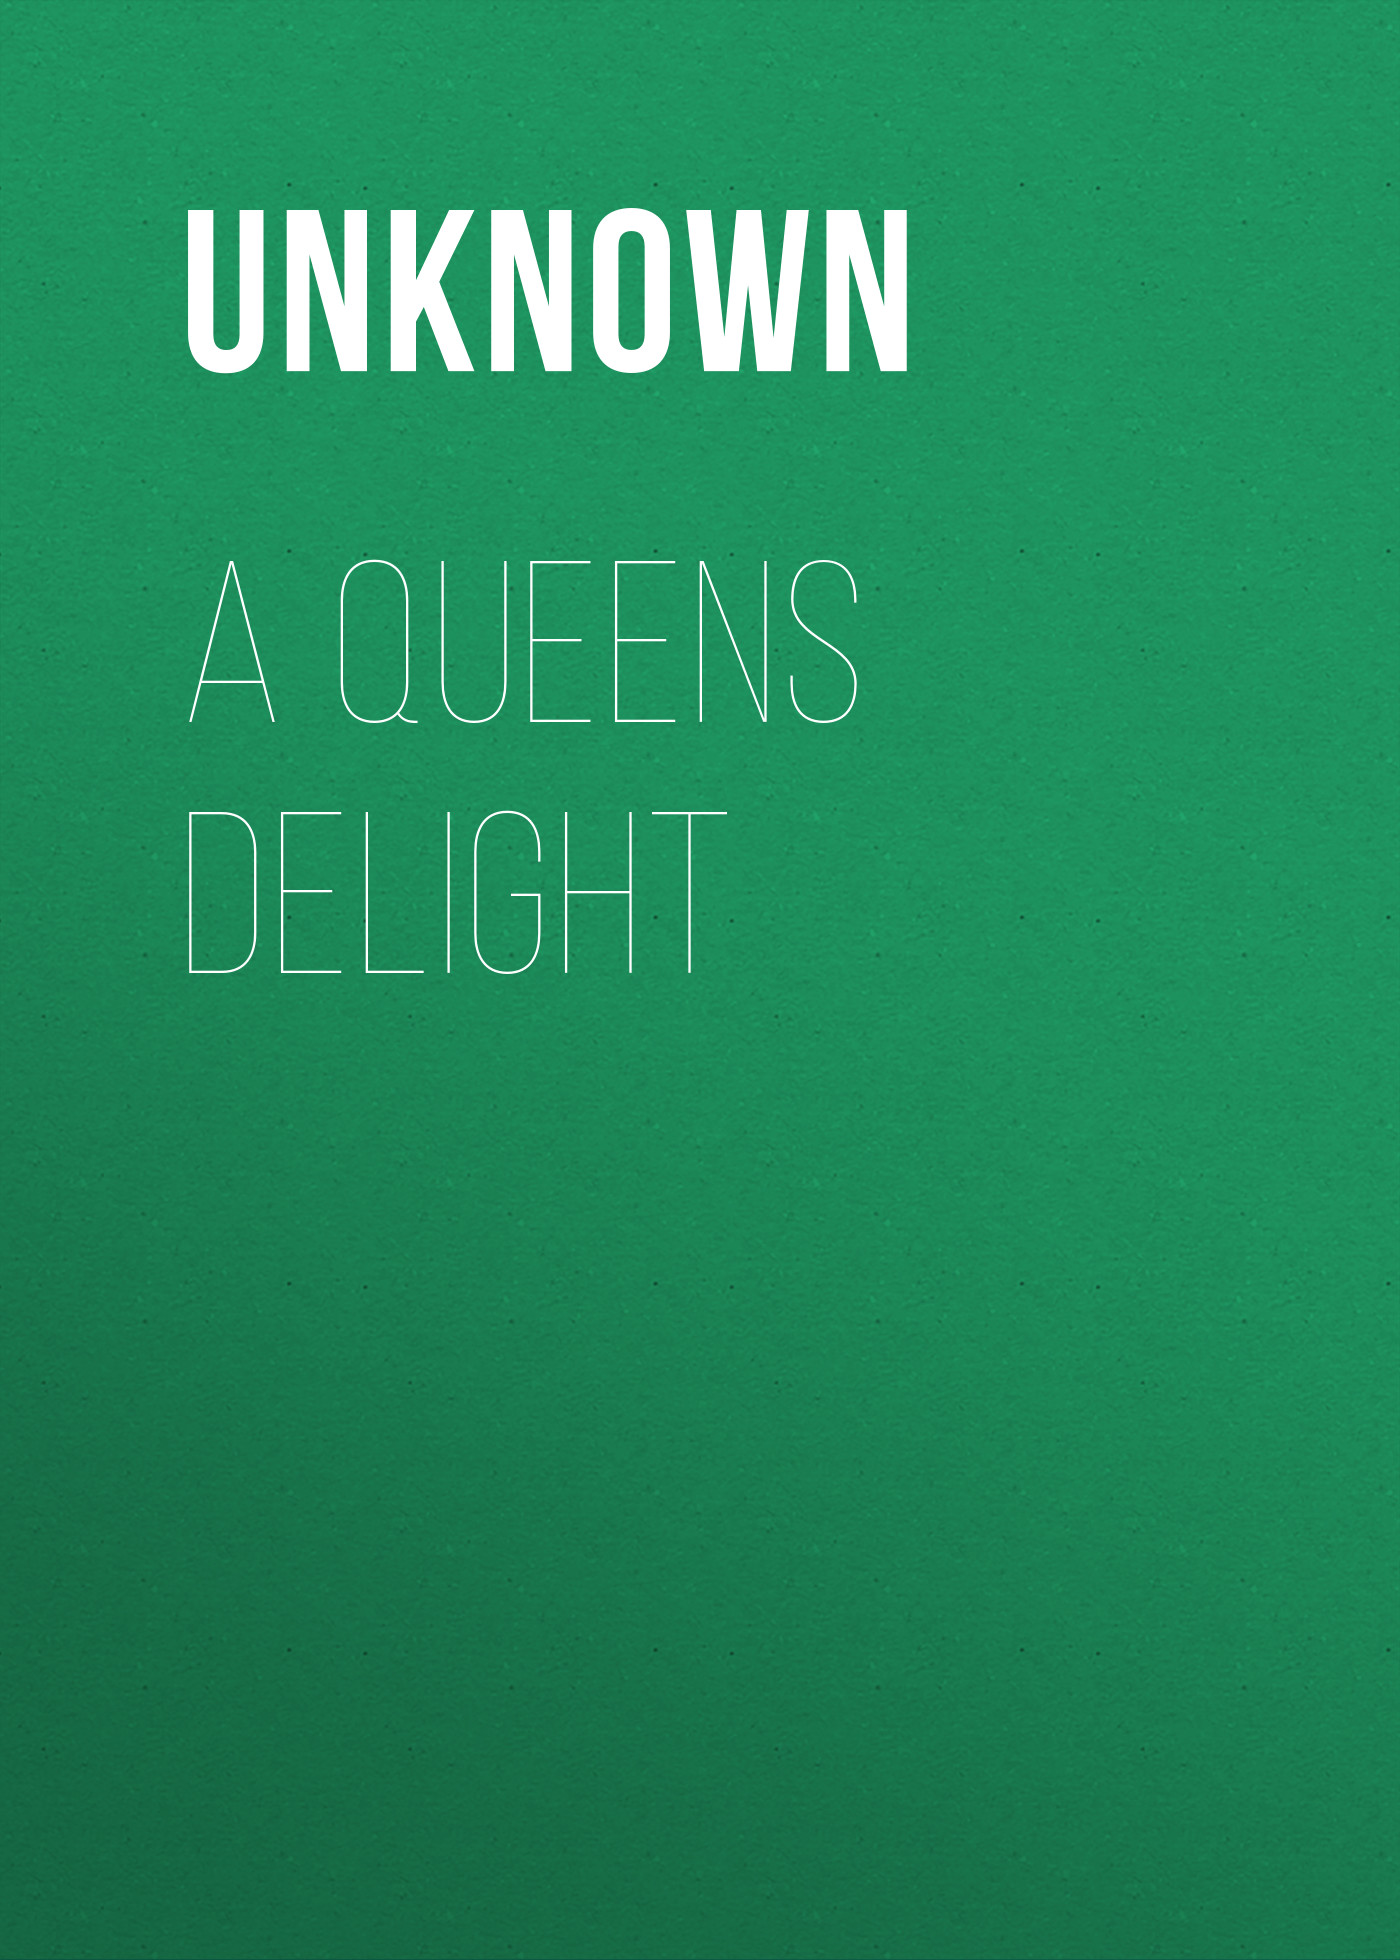 Книга A Queens Delight из серии , созданная Unknown Unknown, может относится к жанру Кулинария, Зарубежная прикладная и научно-популярная литература. Стоимость электронной книги A Queens Delight с идентификатором 35495671 составляет 0 руб.